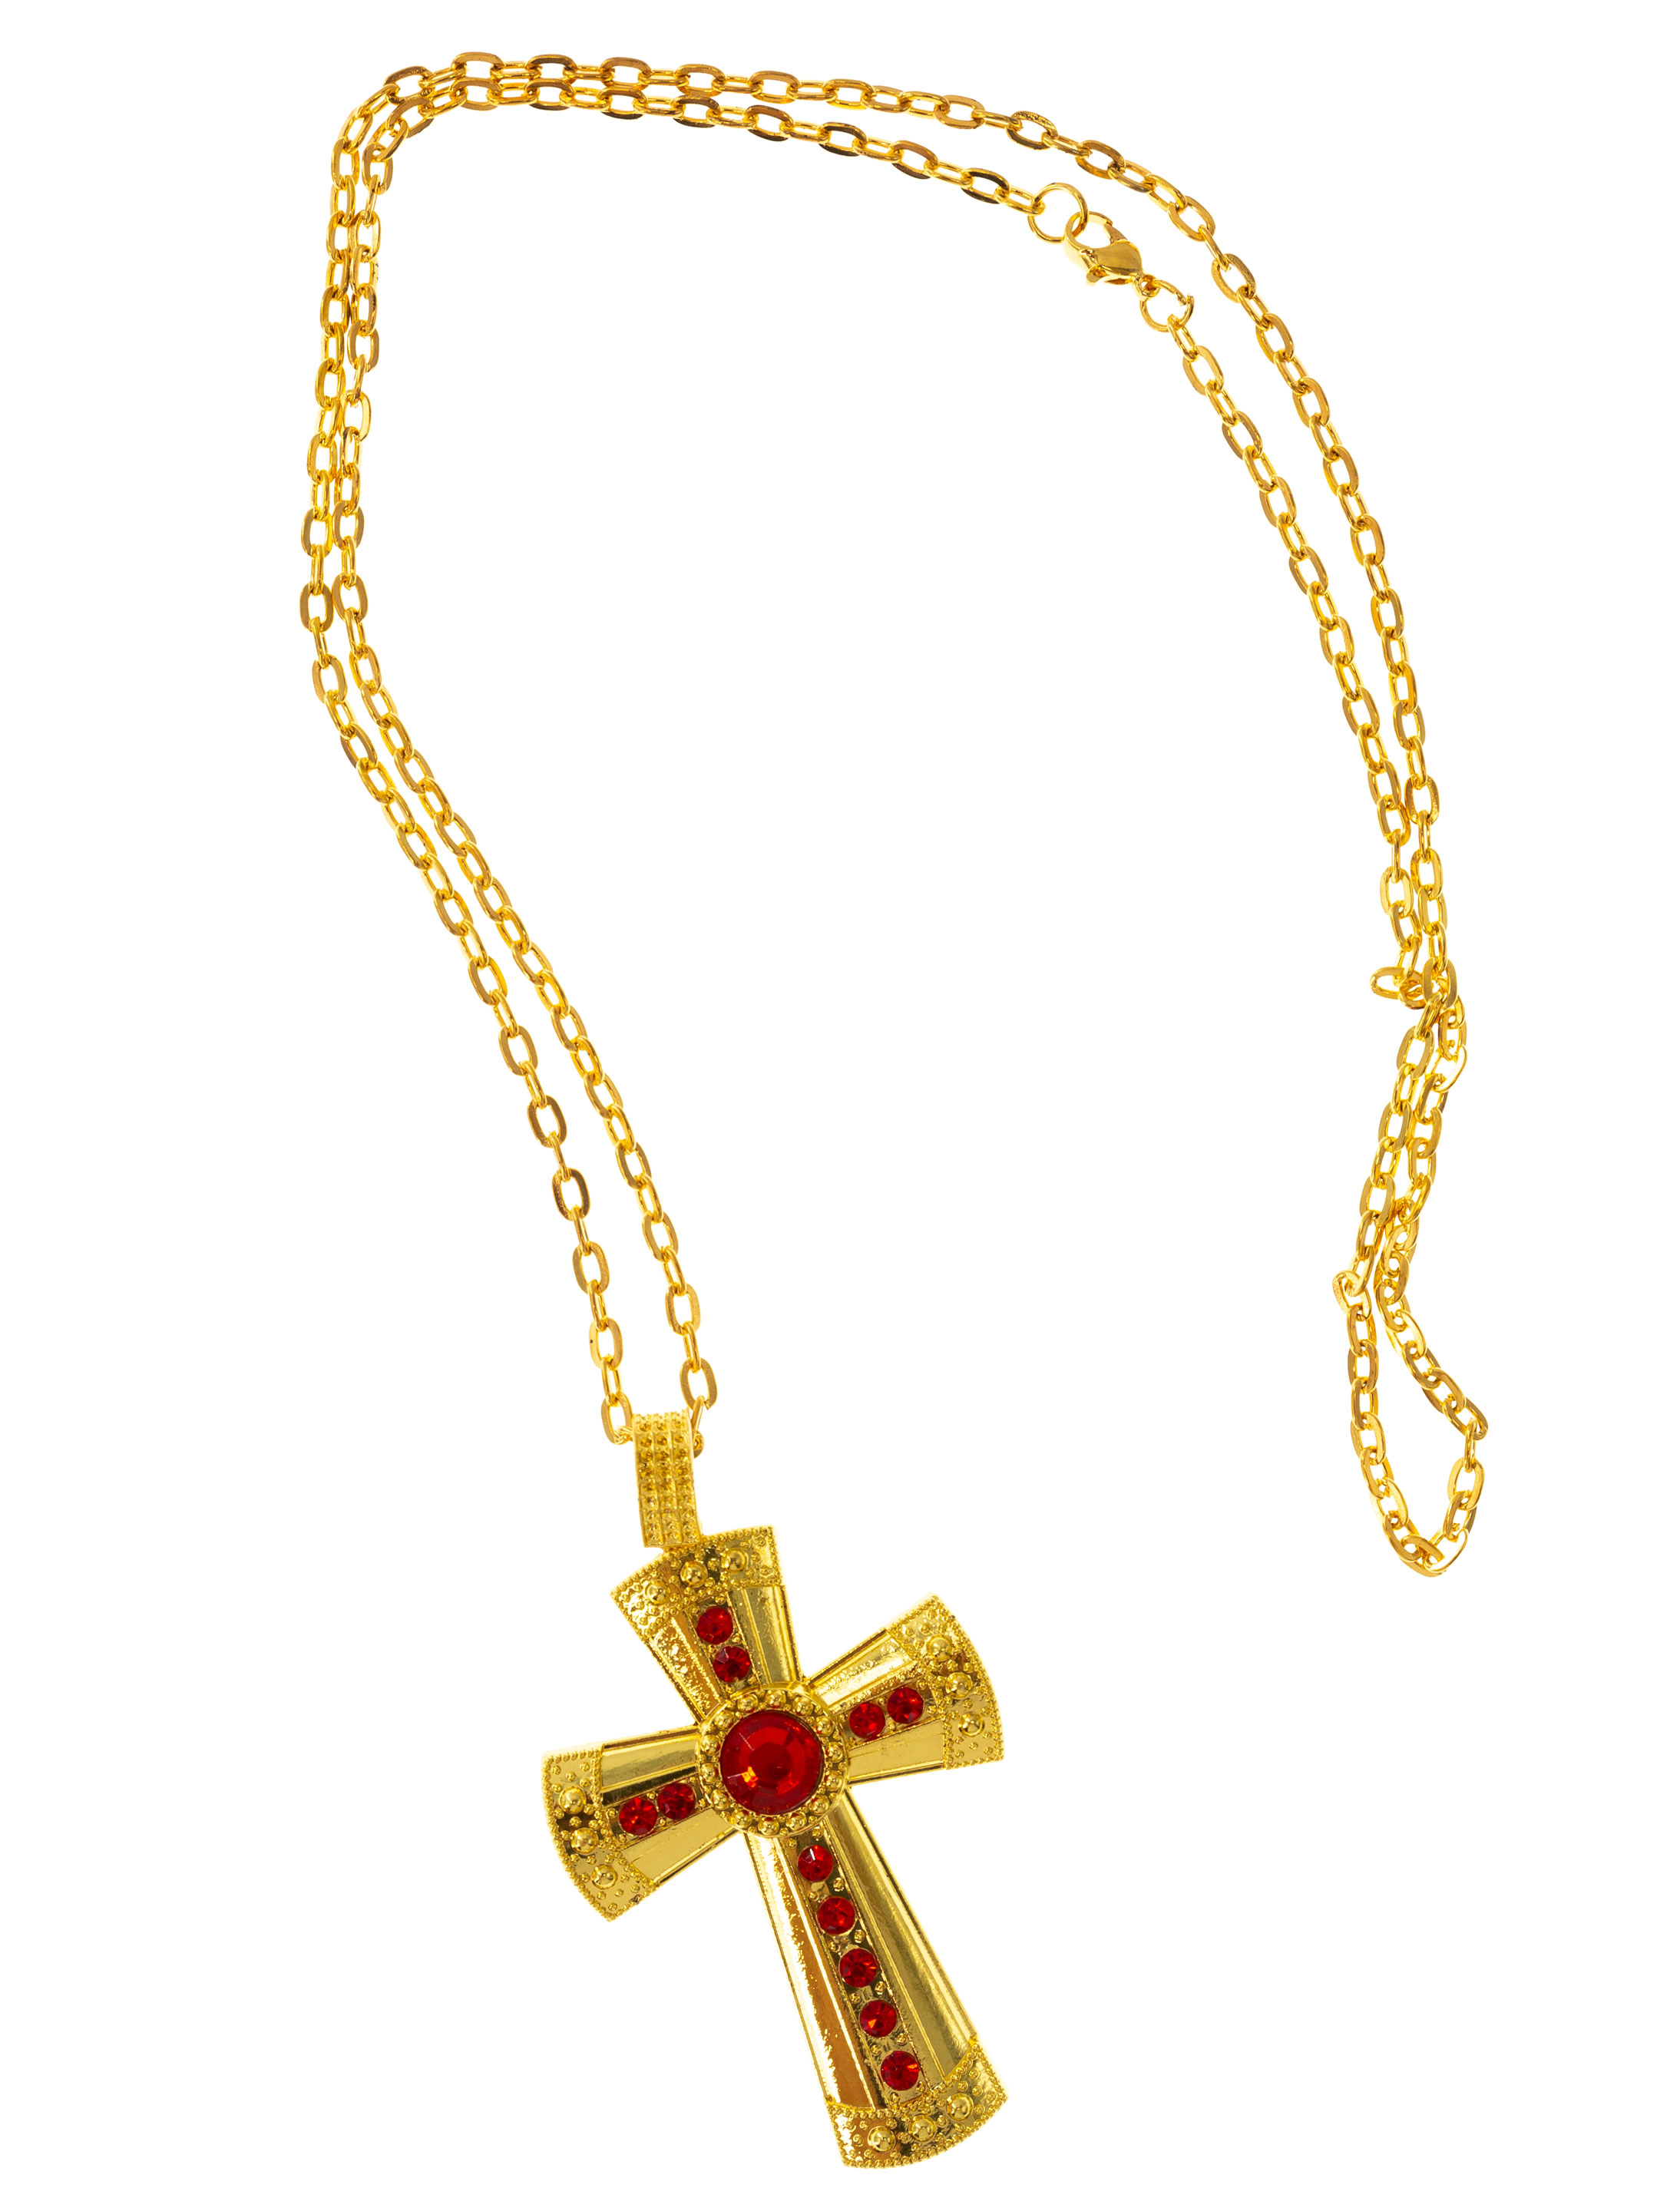 Halskette Kreuz gold mit roten Steinen